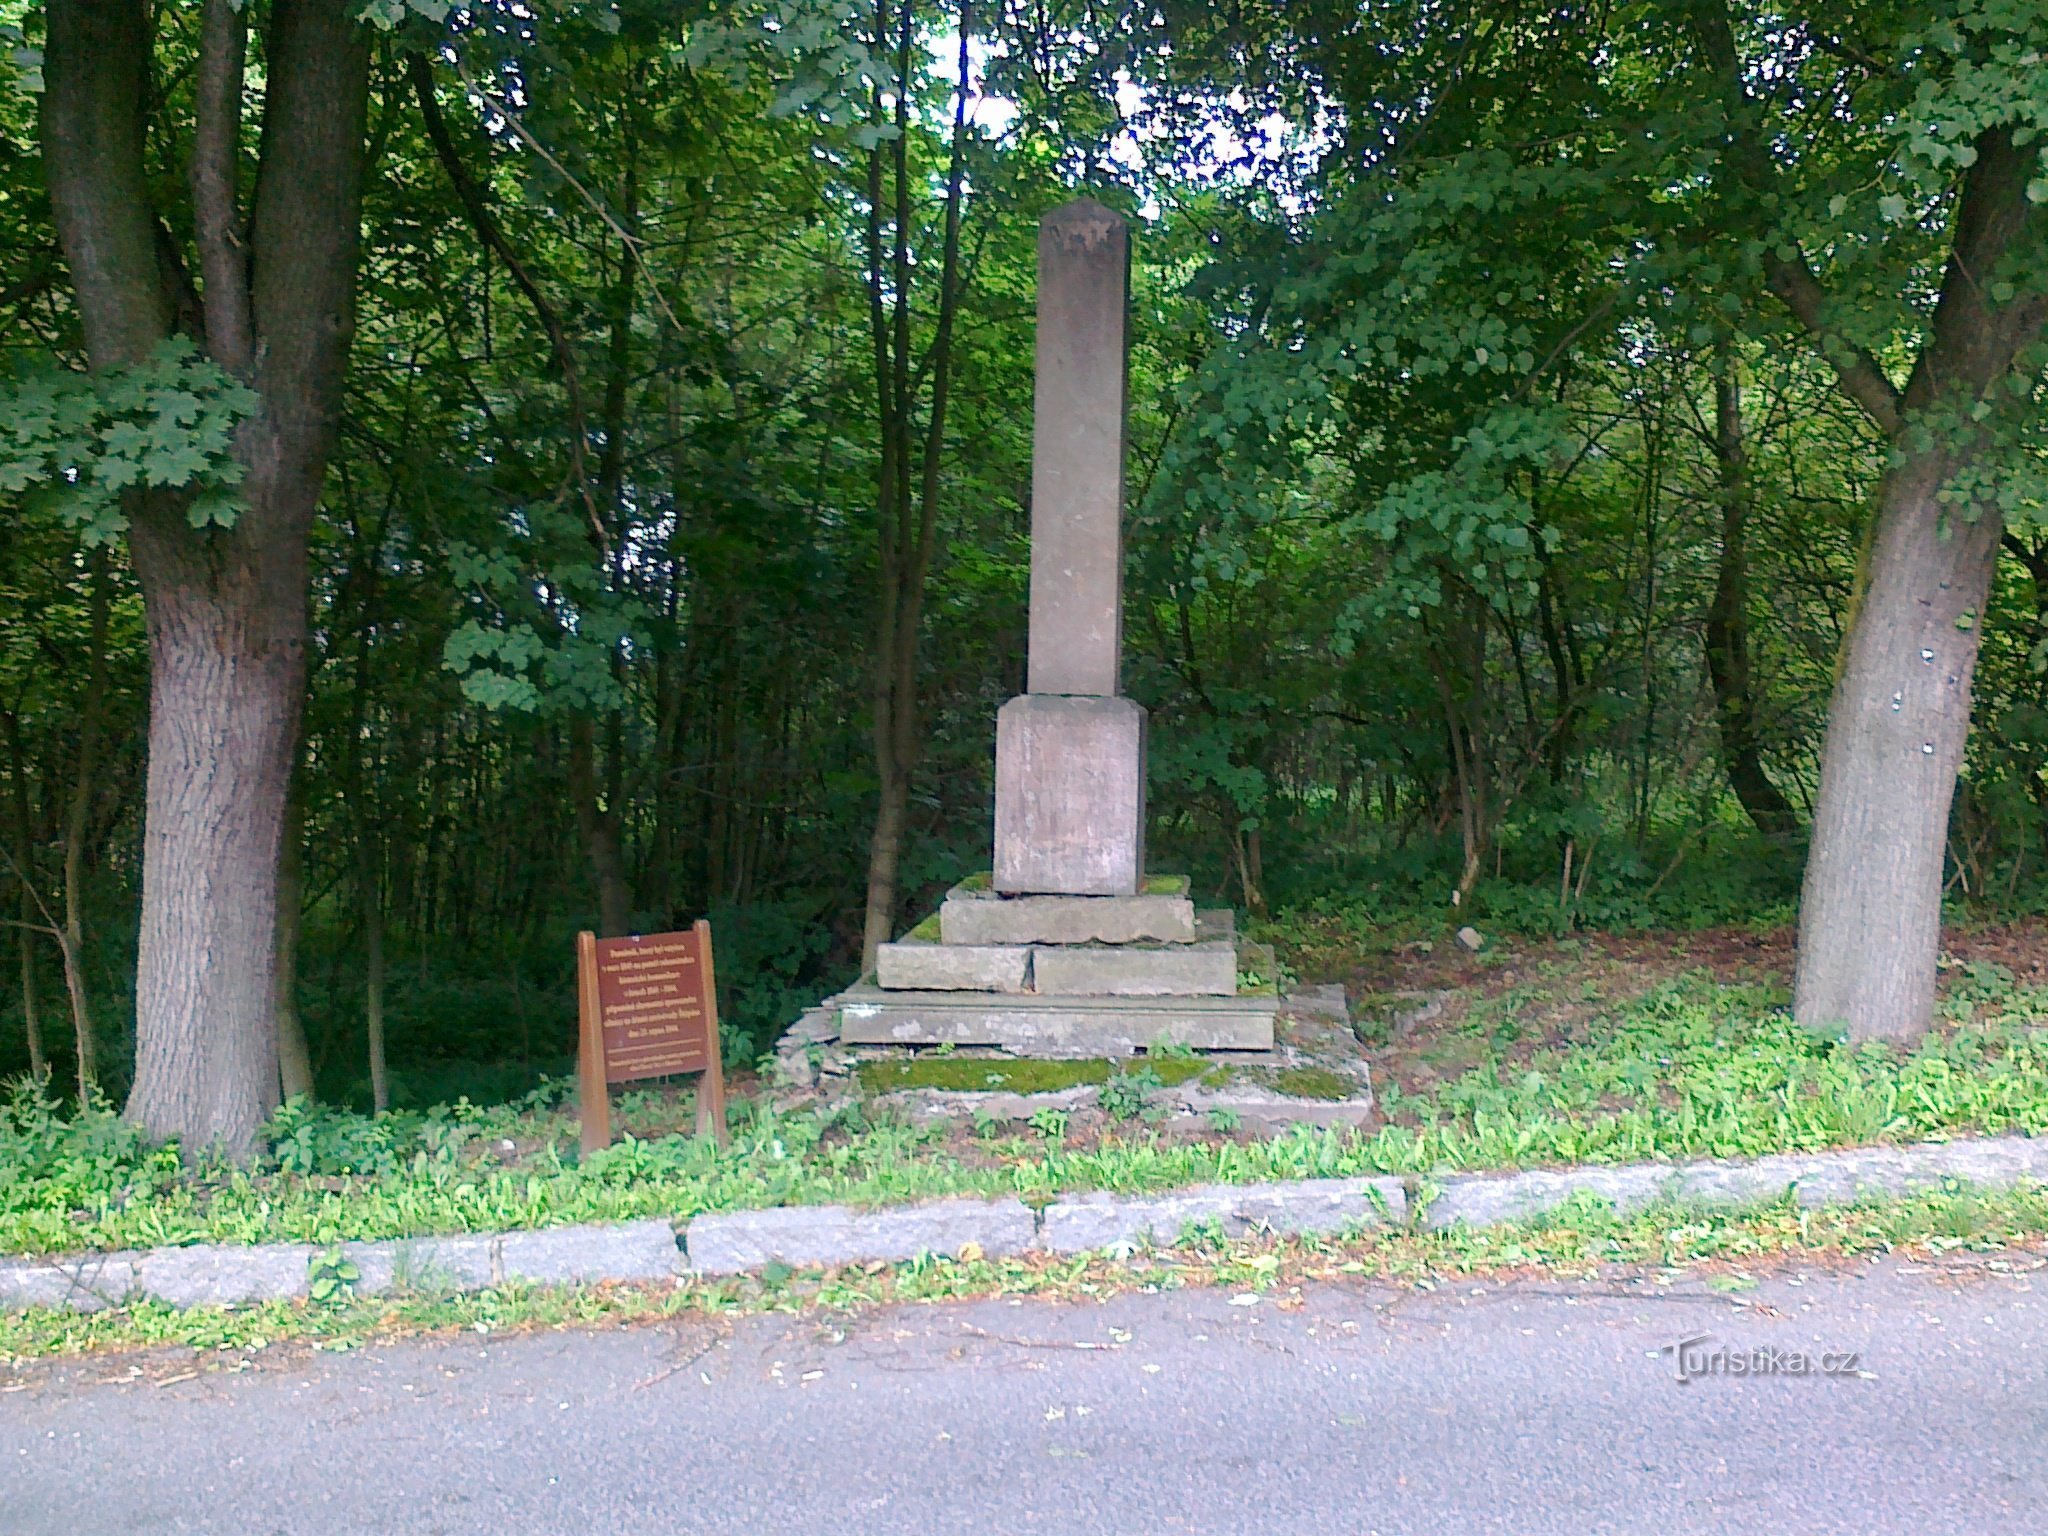 Monument in Mníšek.